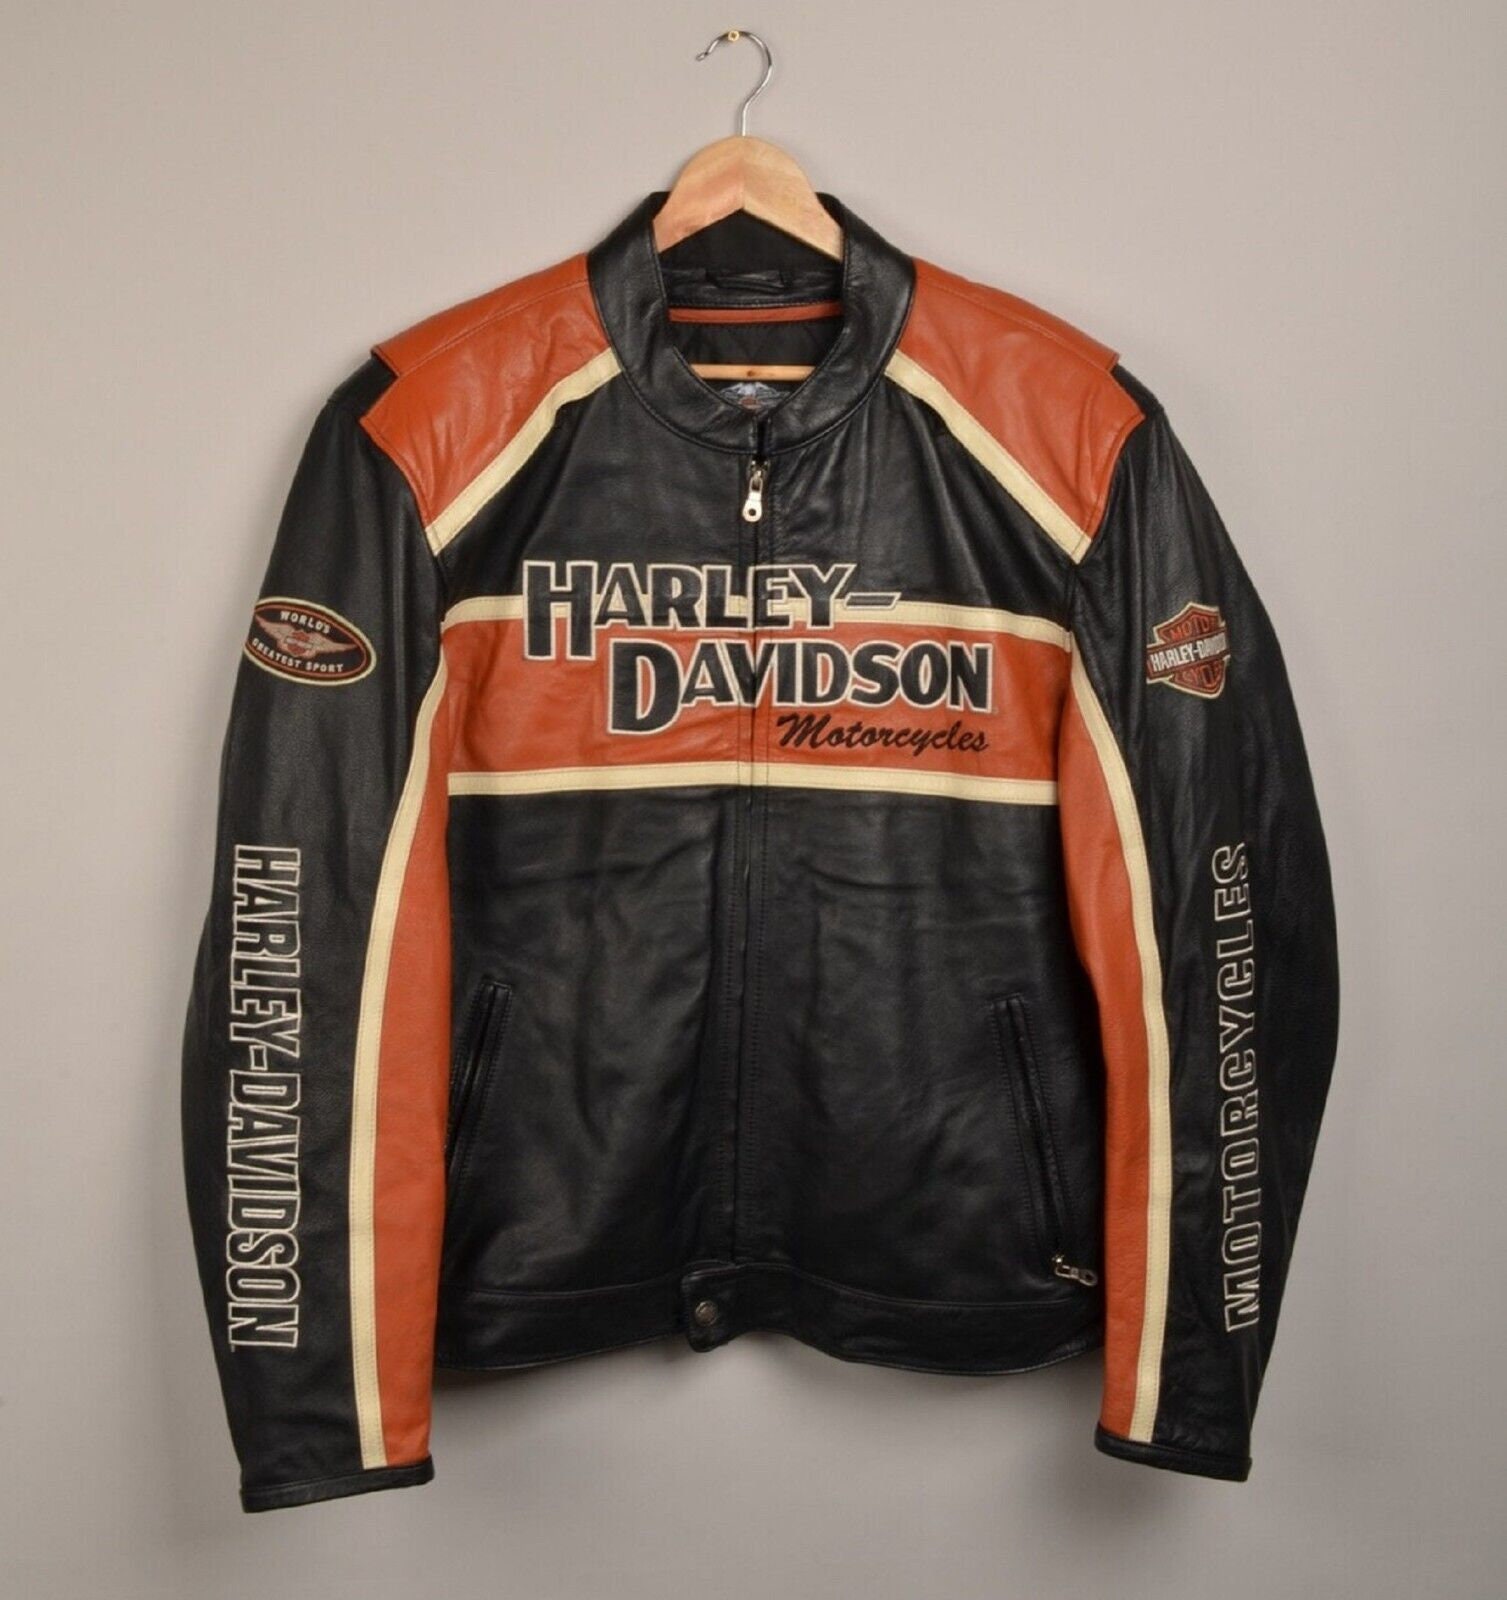 New Harley Cruiser Orange Motorcycle Leather Safety Jacket - Etsy